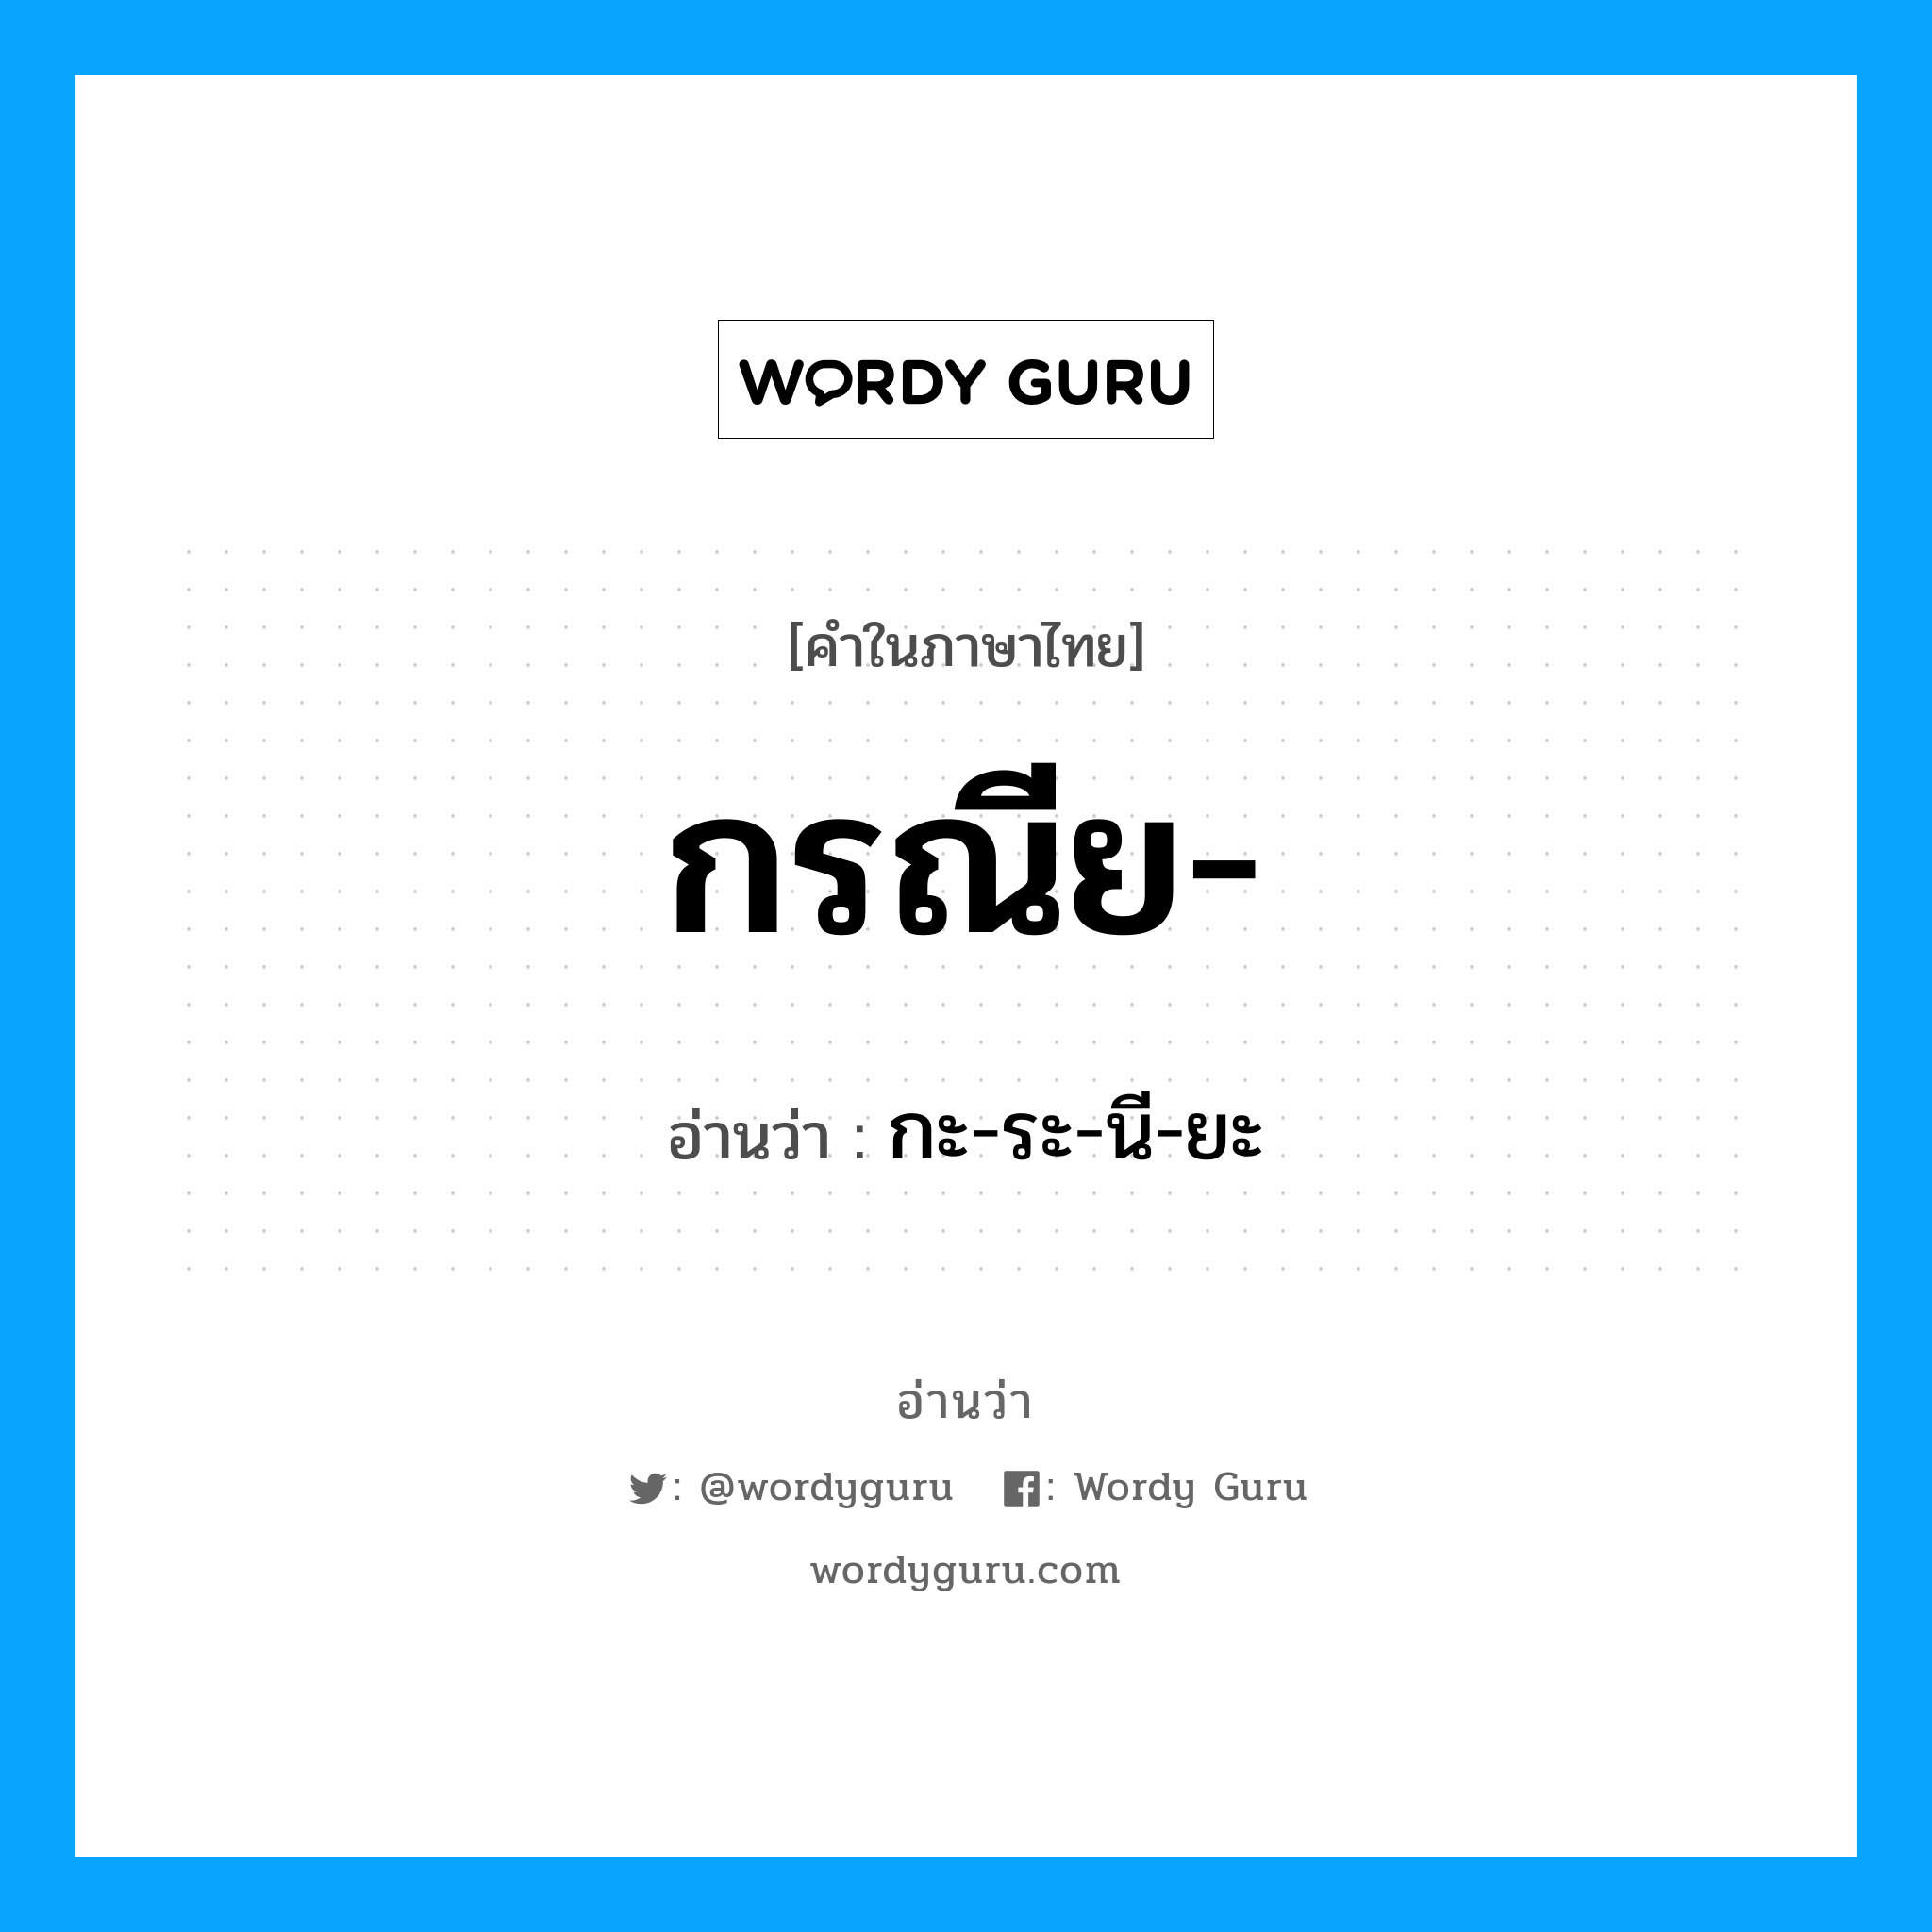 กะ-ระ-นี-ยะ เป็นคำอ่านของคำไหน?, คำในภาษาไทย กะ-ระ-นี-ยะ อ่านว่า กรณีย-